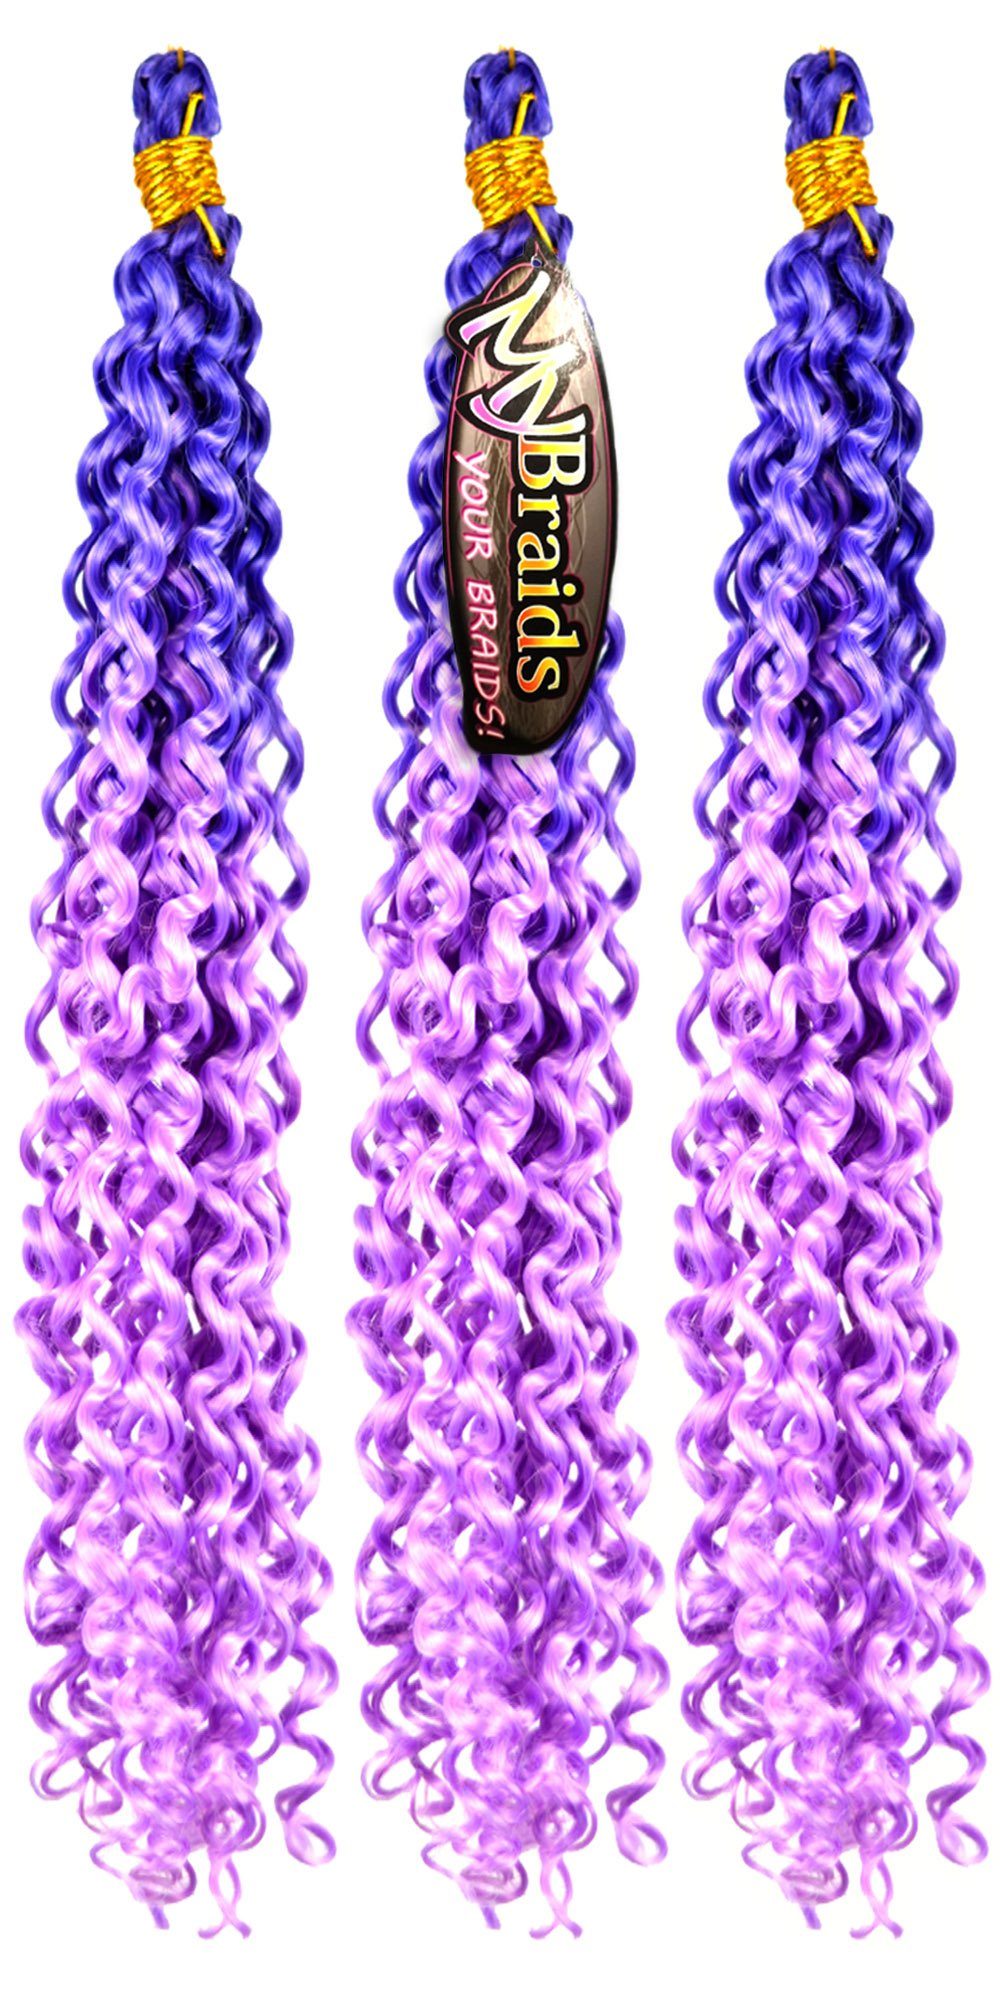 Wellig Wave Zöpfe Crochet Pack YOUR MyBraids Kunsthaar-Extension Deep 21-WS Braids Flechthaar 3er Ombre Blauviolett-Hellviolett BRAIDS!